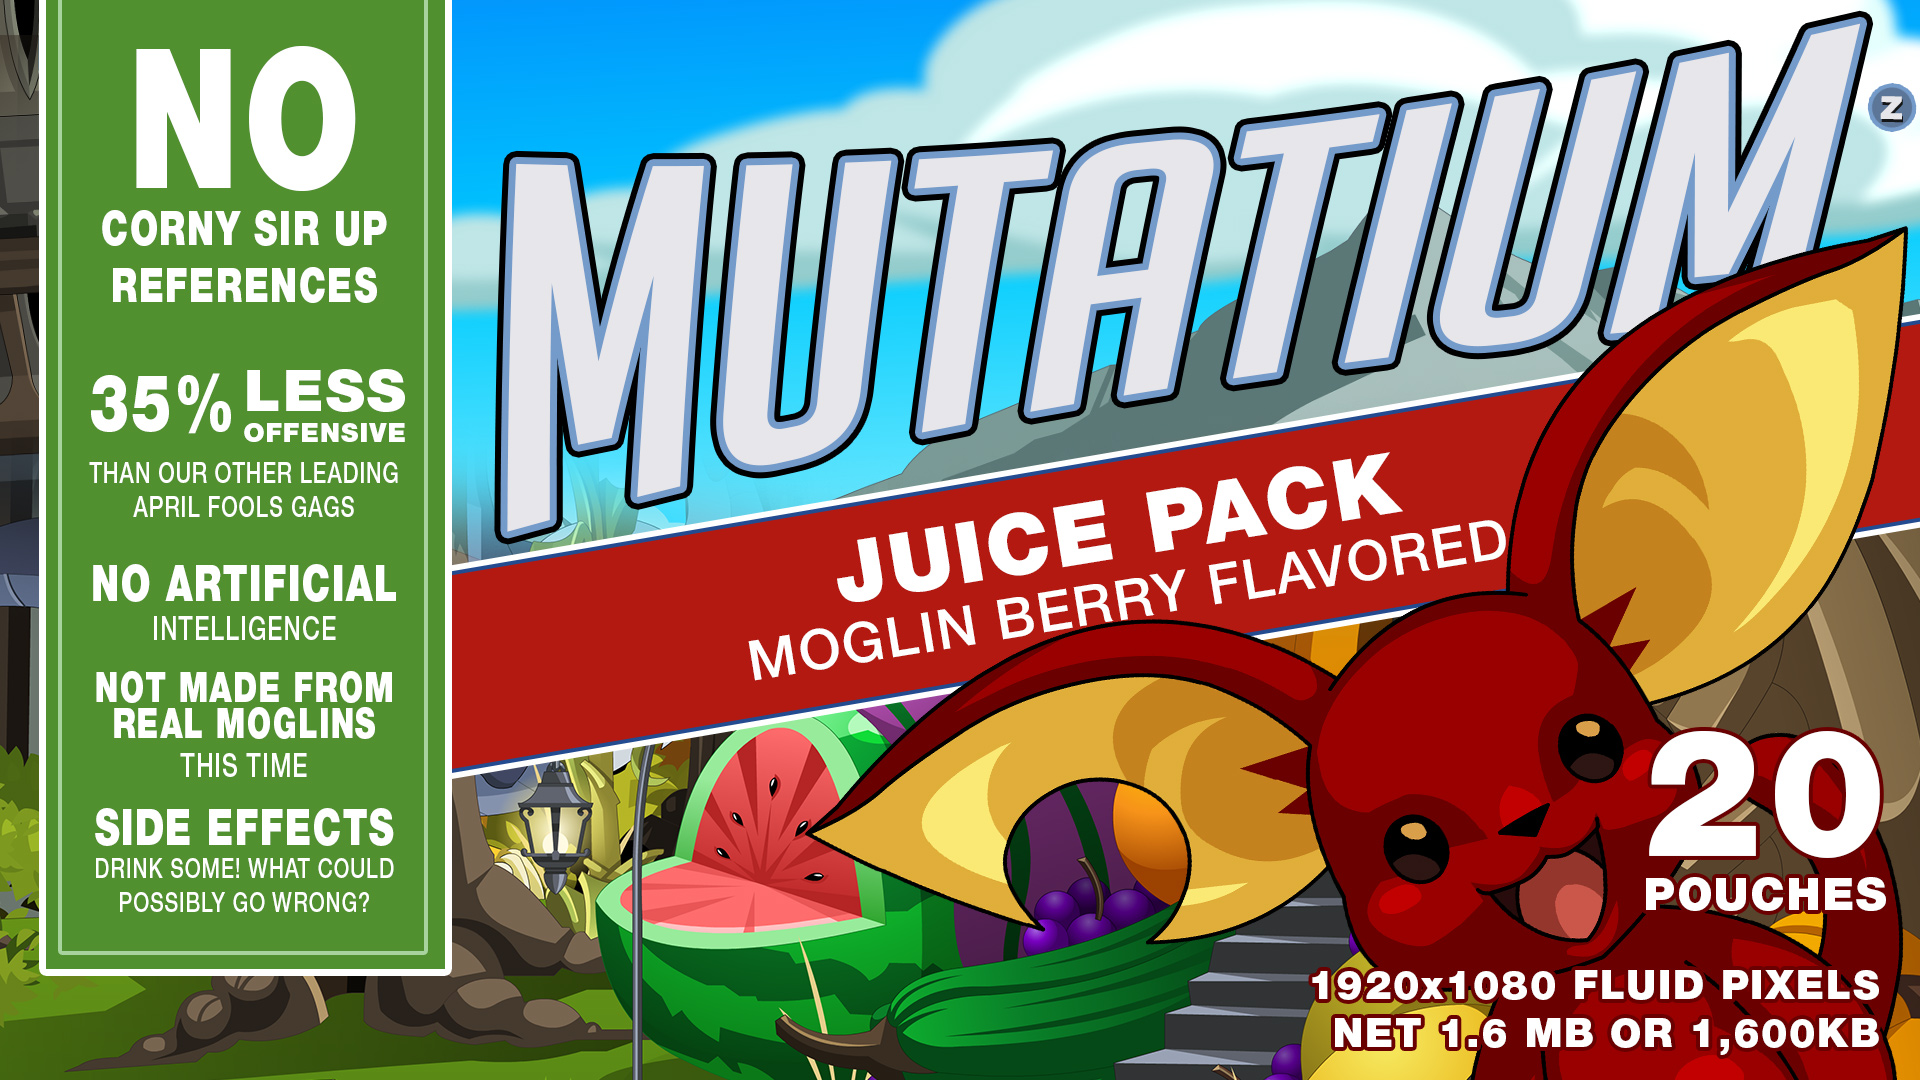 Mutatium Juice Pack